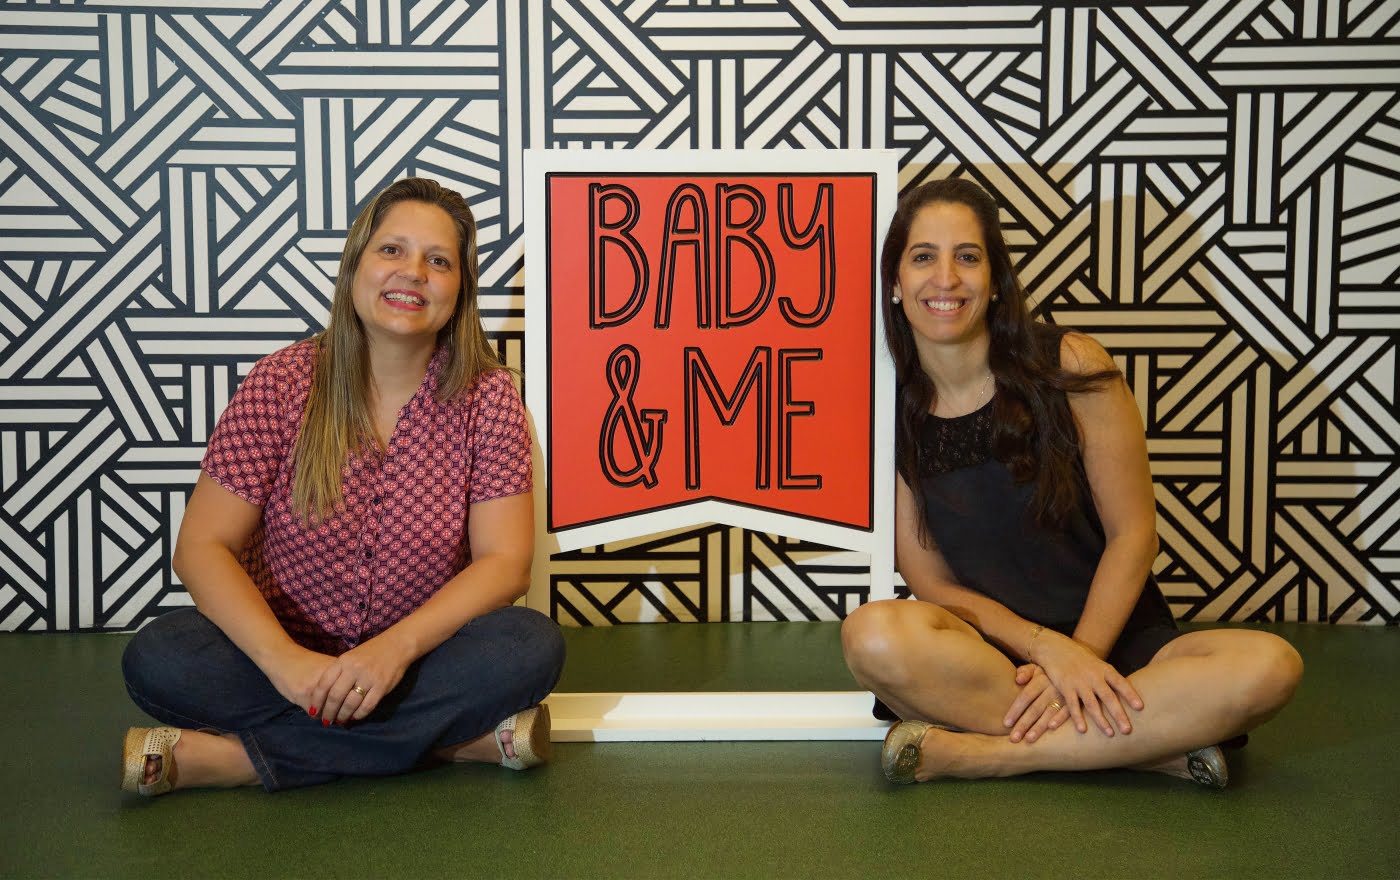 A publicitária Karen Kanaan e a produtora de eventos Ana Carolina Vaz se conheceram em um curso de empreendedorismo do Sebrae. A sinergia foi tanta que hoje elas são sócias na Baby&Me (foto: Paulo Liebert).